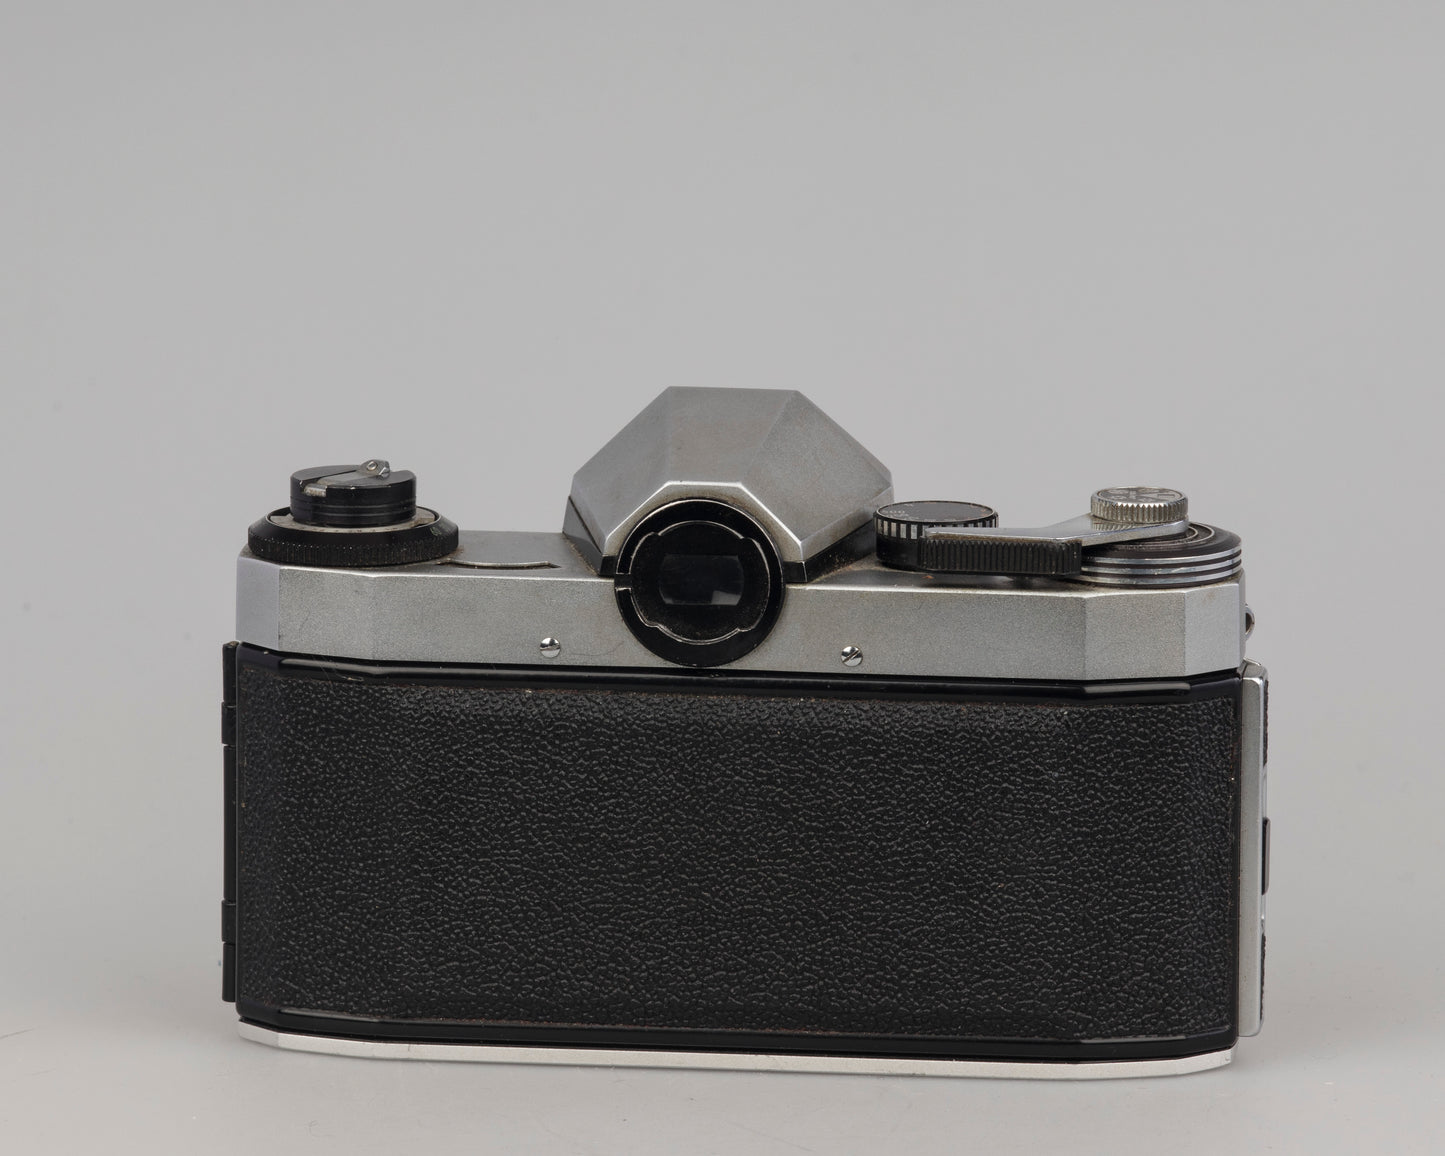 Praktica Nova 1B 35mm SLR camera with Exaktar 135mm f2.8 lens